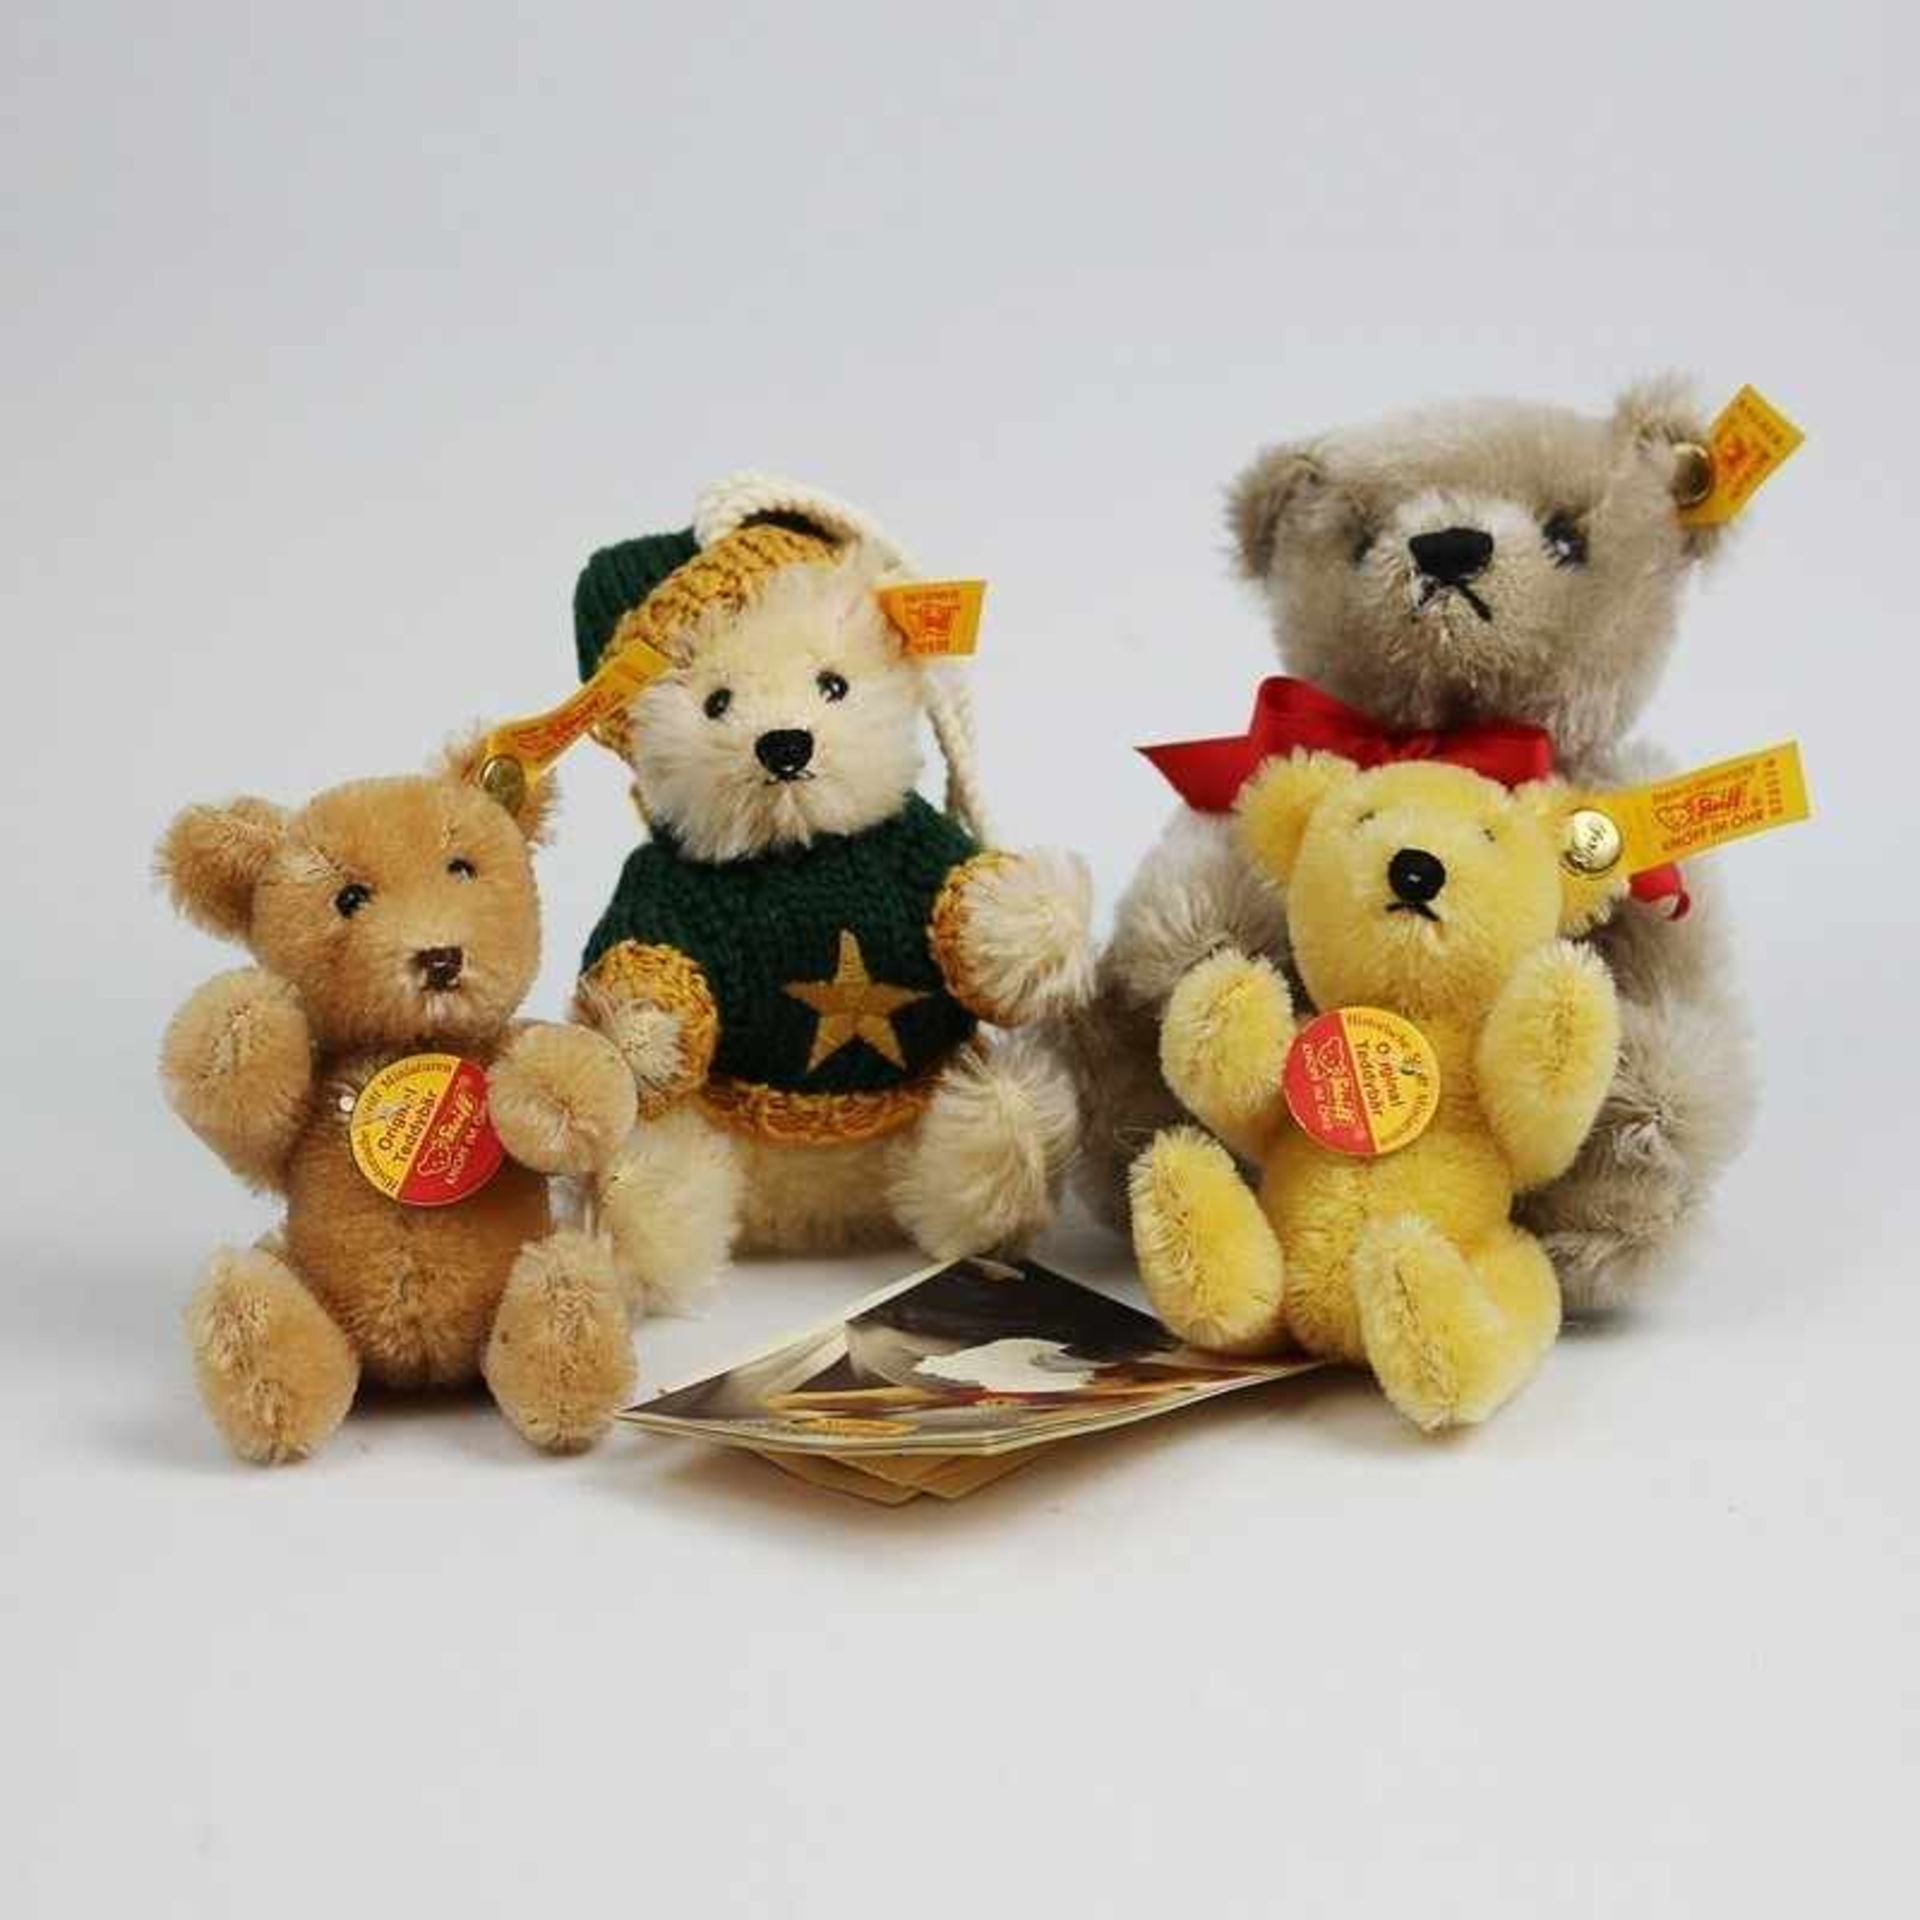 Steiff - Plüschtiere 4x Teddy, gem., Miniaturen, grau, beige, blond, dunkelblond, 1x als Anhänger in